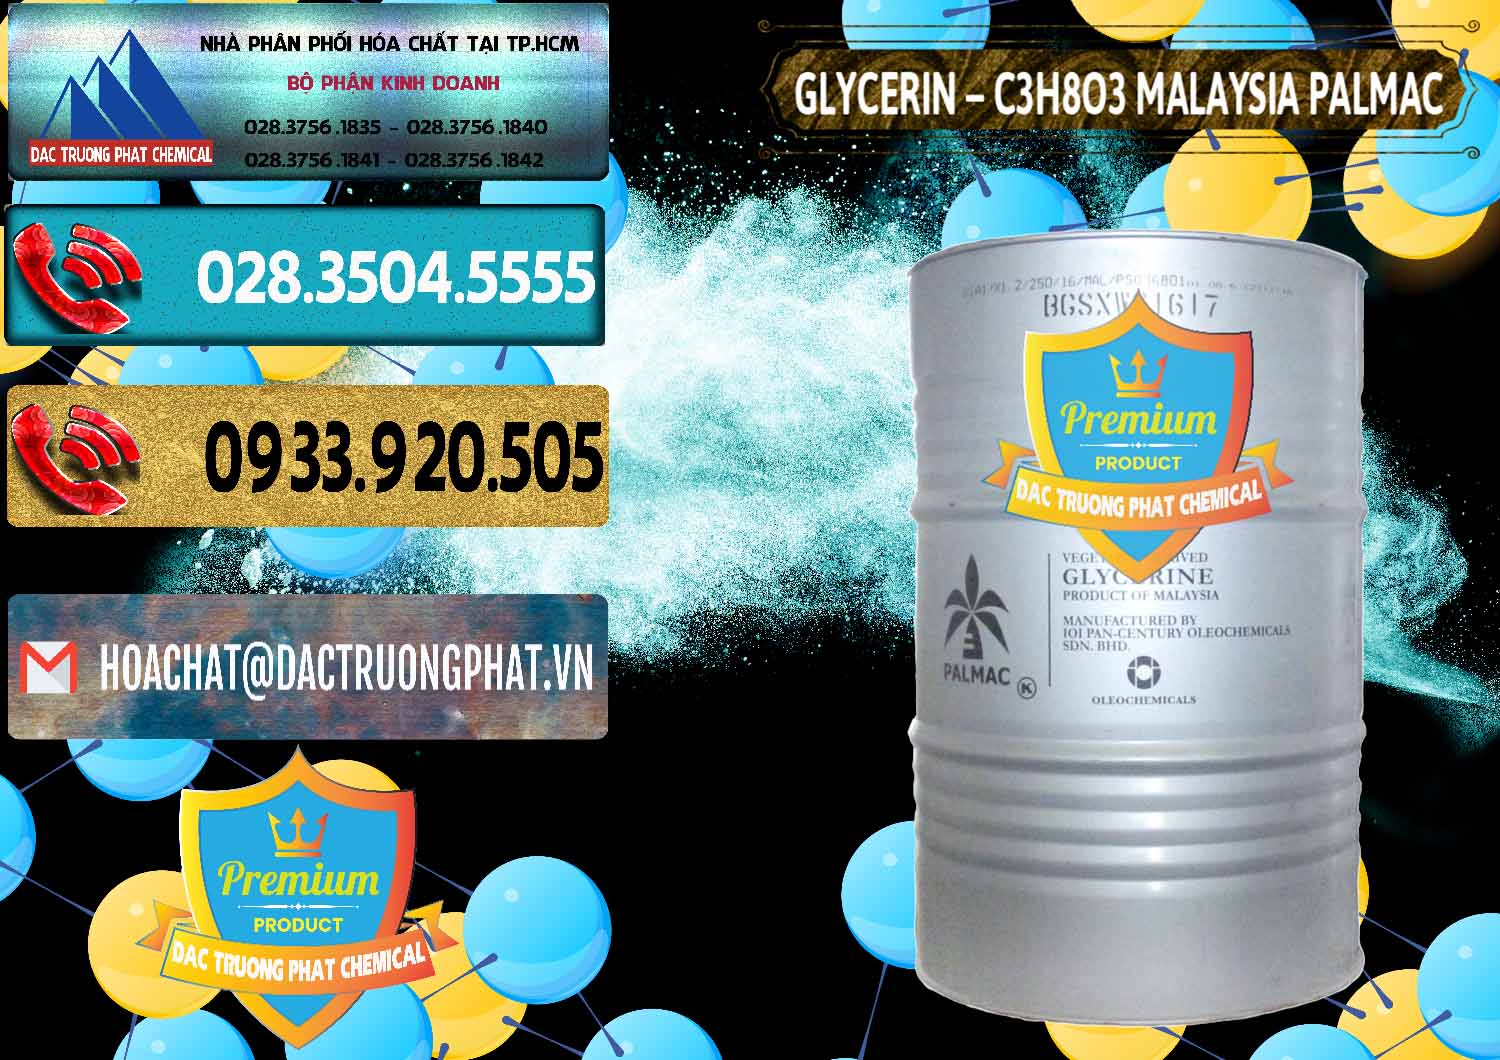 Chuyên phân phối & bán Glycerin – C3H8O3 99.7% Malaysia Palmac - 0067 - Công ty cung cấp & phân phối hóa chất tại TP.HCM - hoachatdetnhuom.com